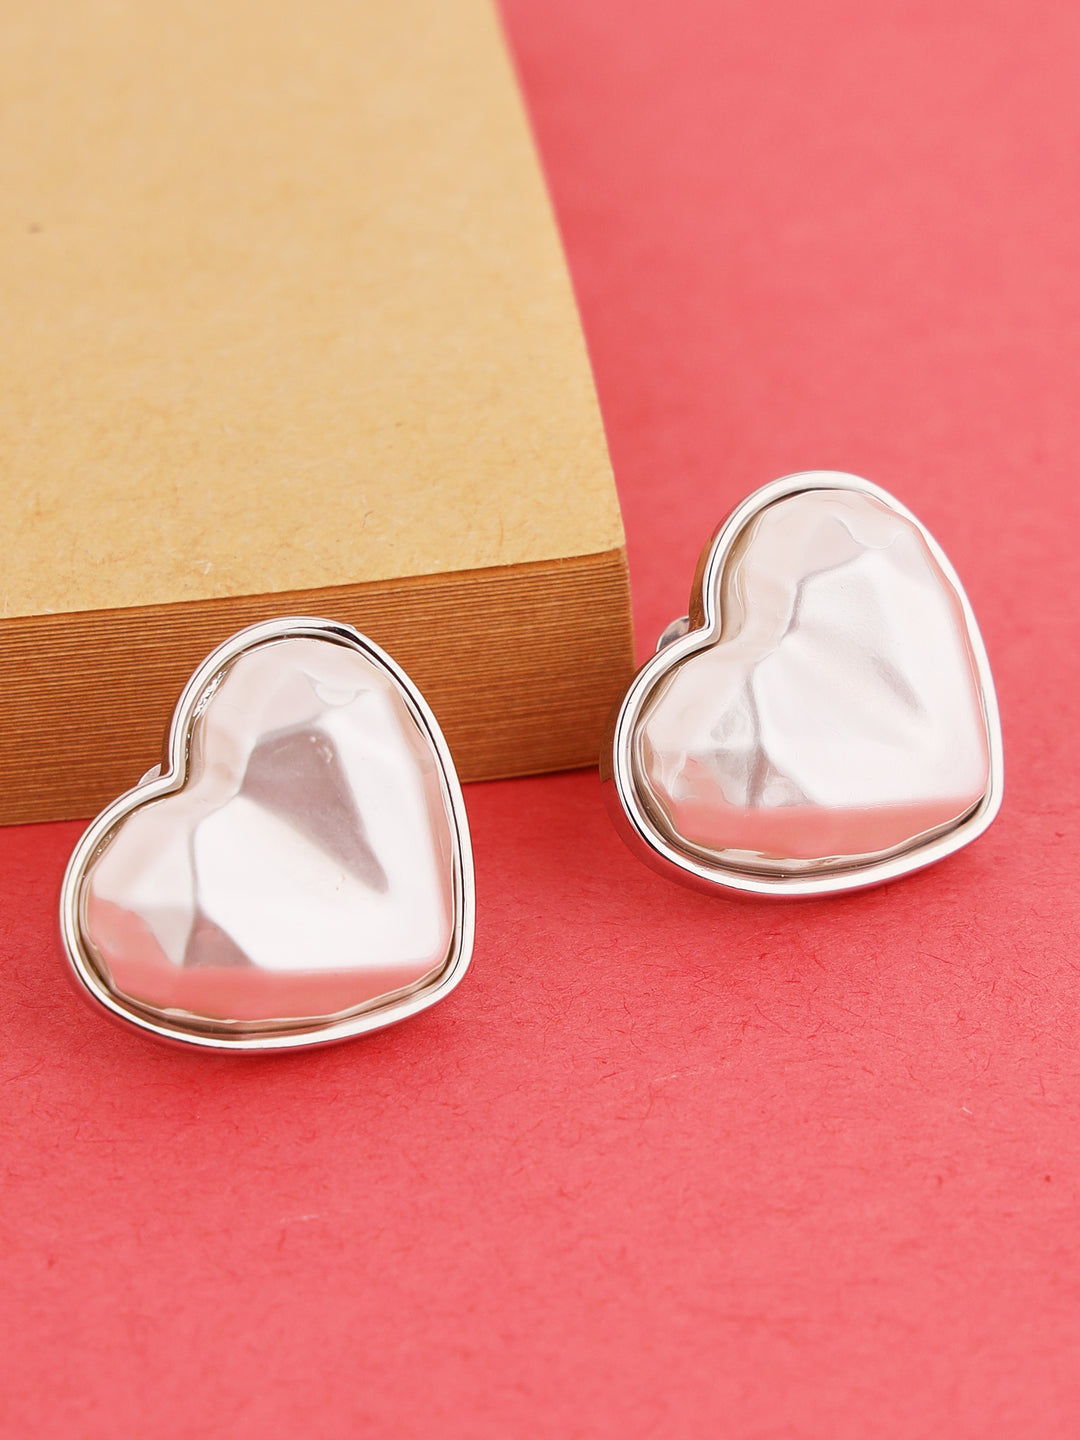 Prita by Priyaasi Glossy White Heart Silver-Plated Stud Earrings